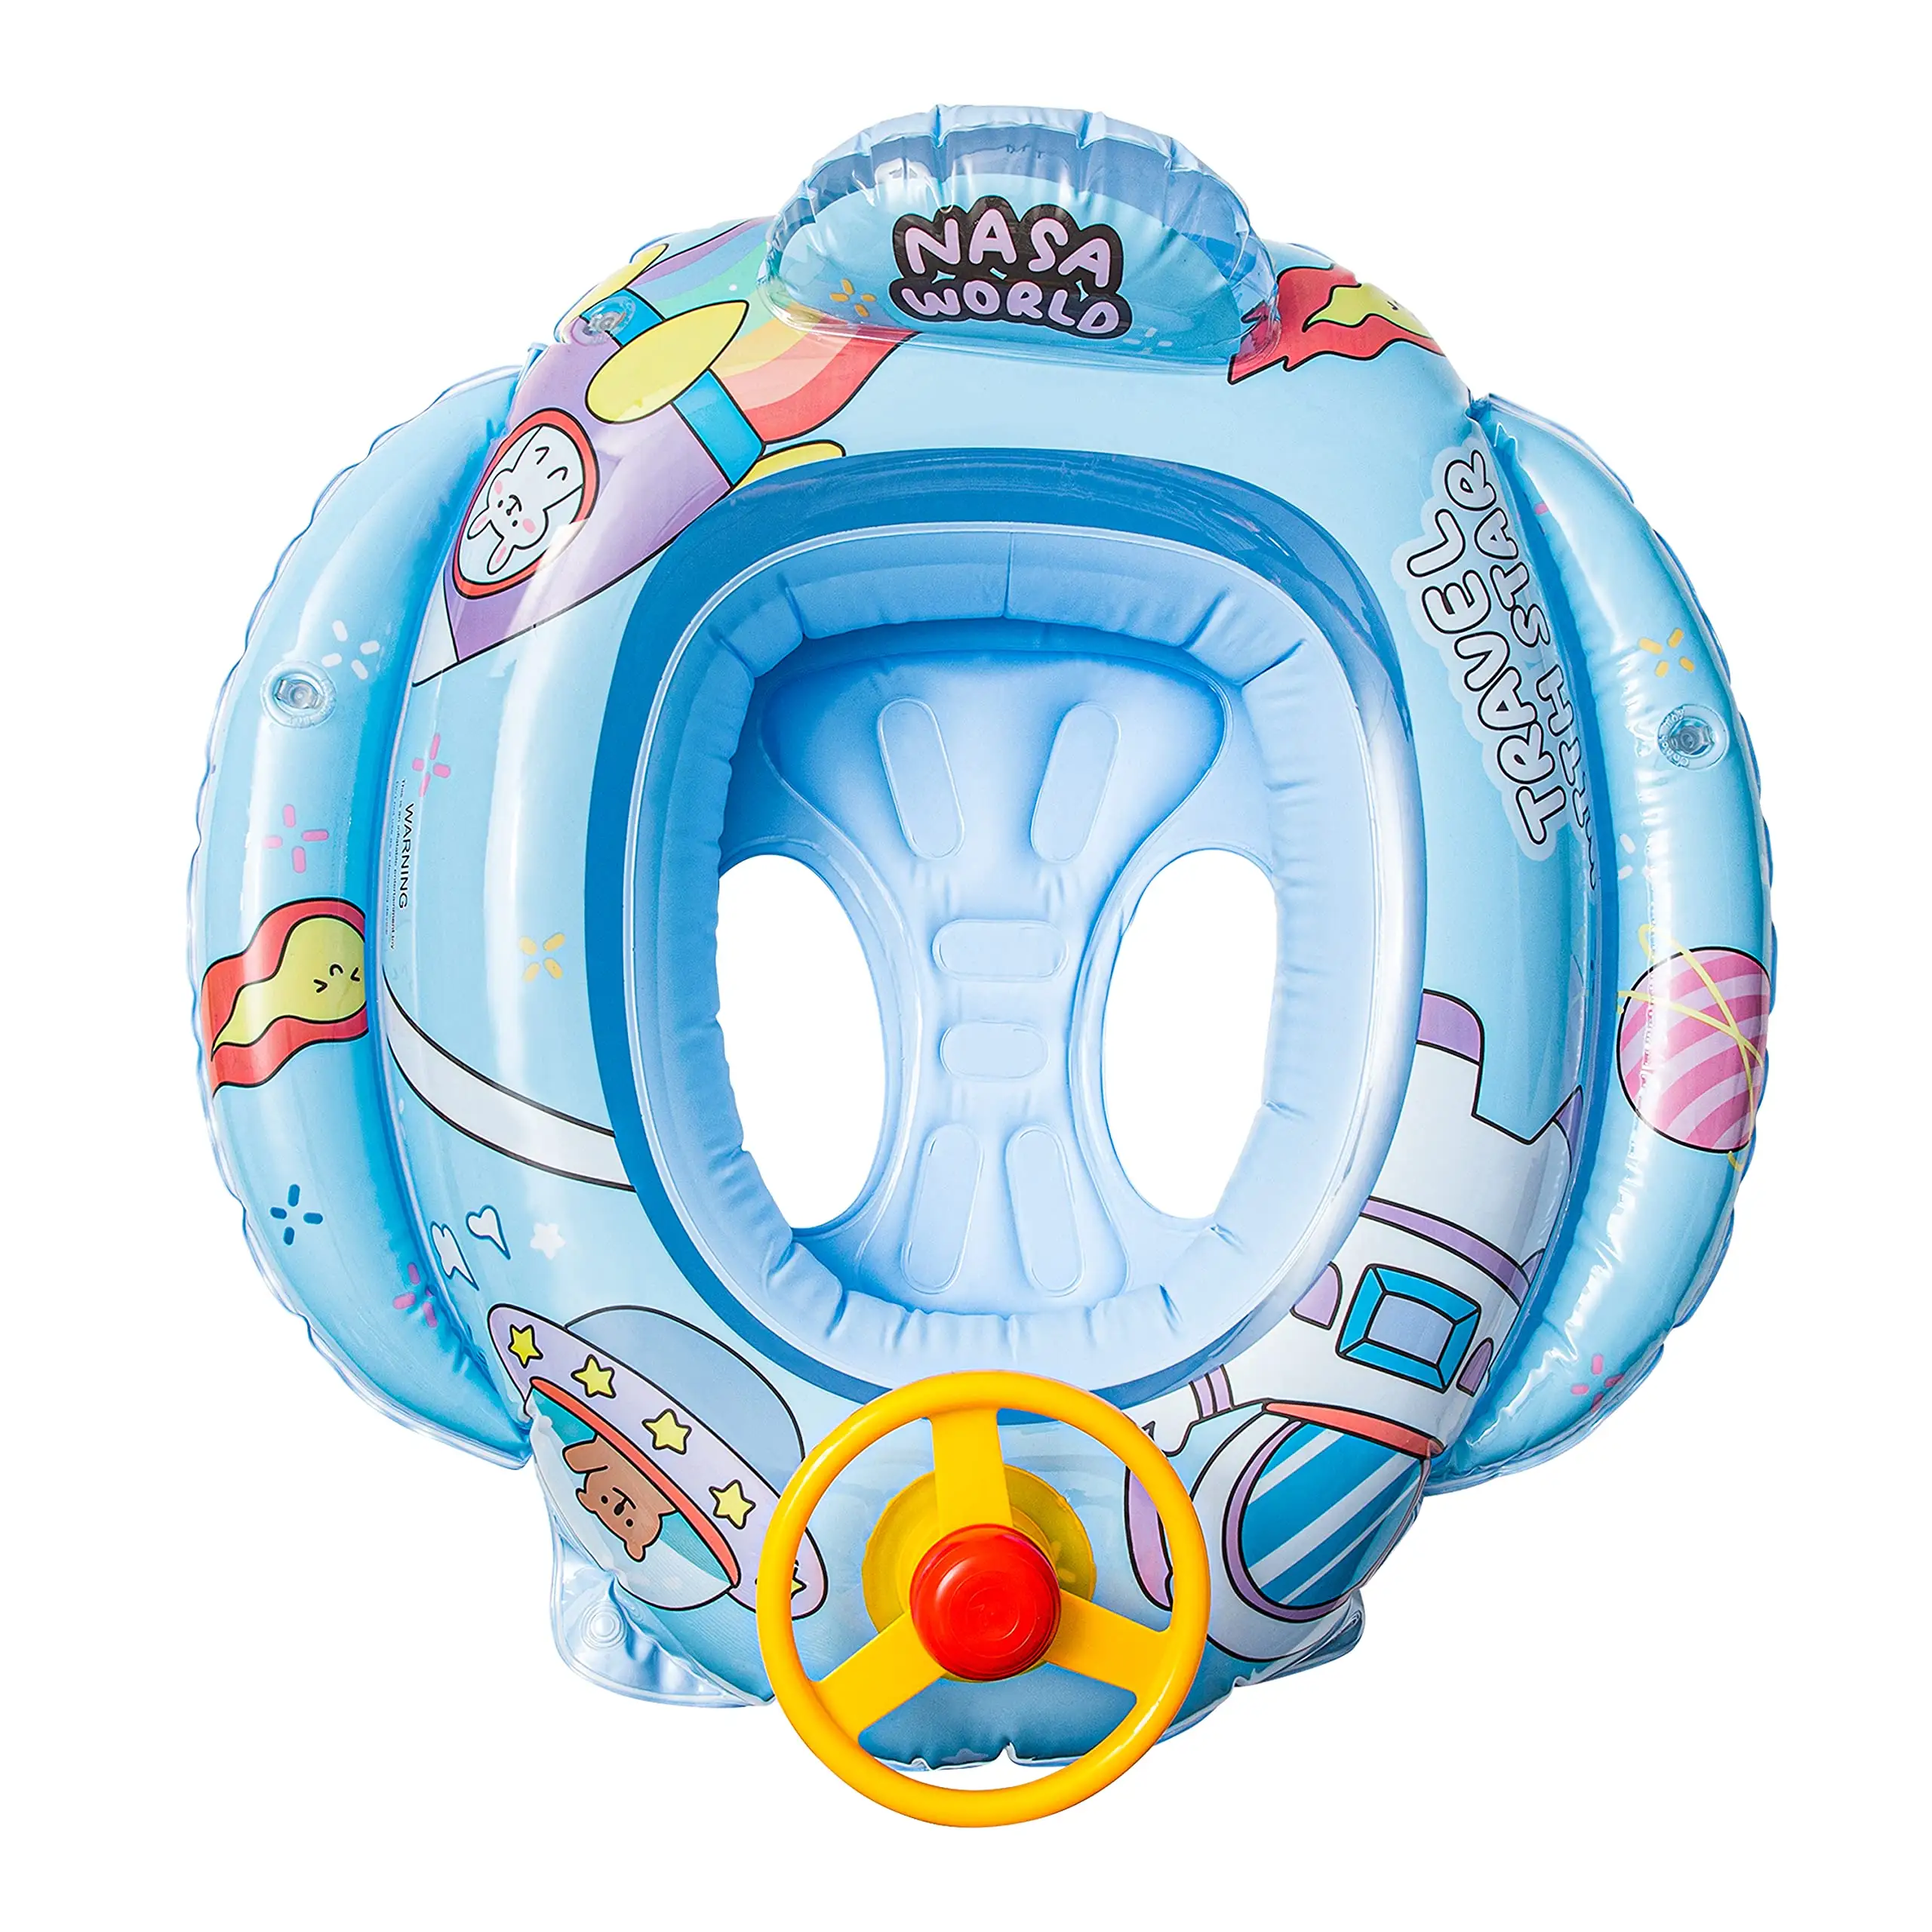 Justauware — siège gonflable en forme d'animal pour enfants, accessoire de natation, siège pour tout-petits, jouets flotteur de plage, pour l'été